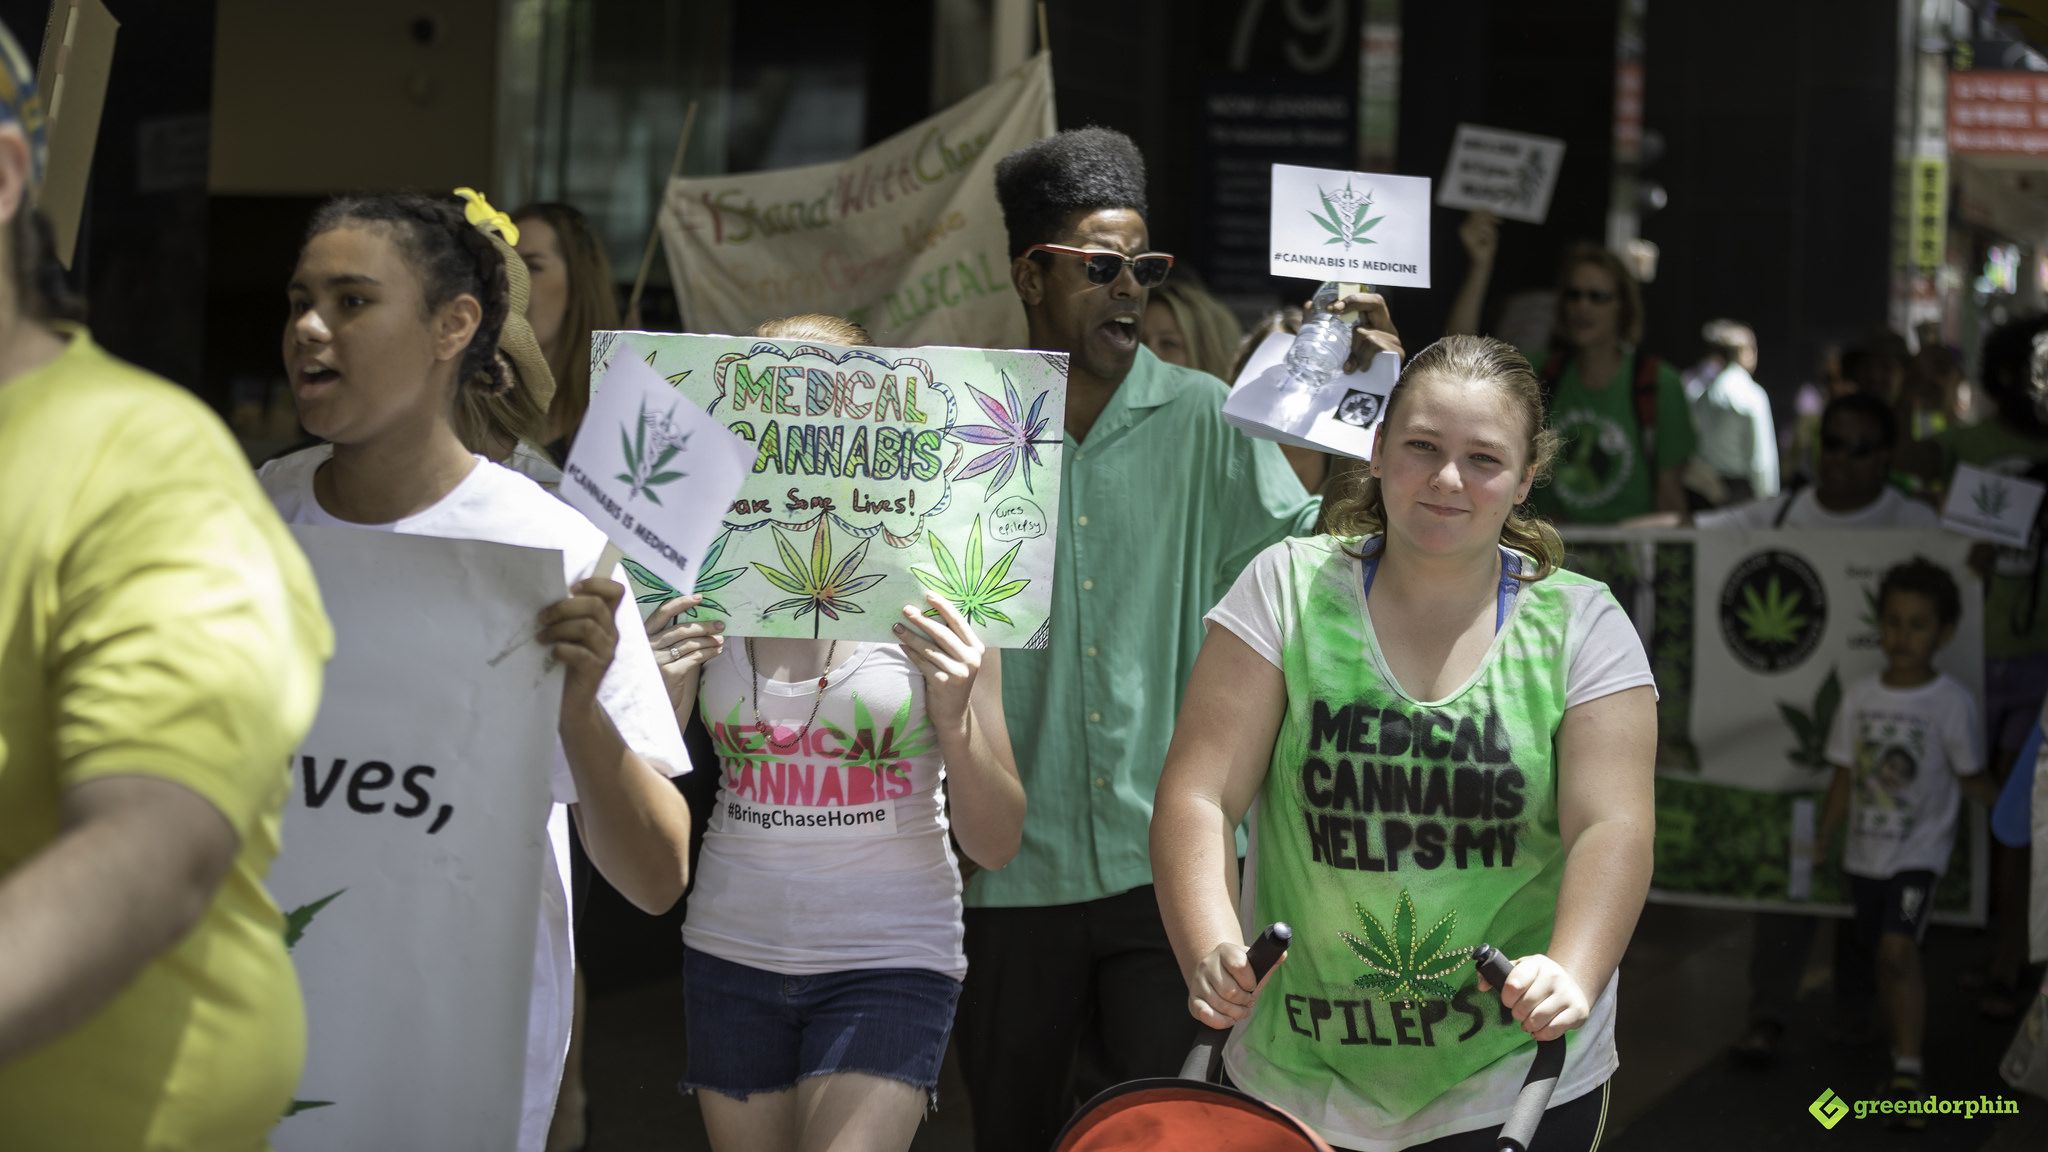 Medical Cannabis Law Reform March - Brisbane, Australia